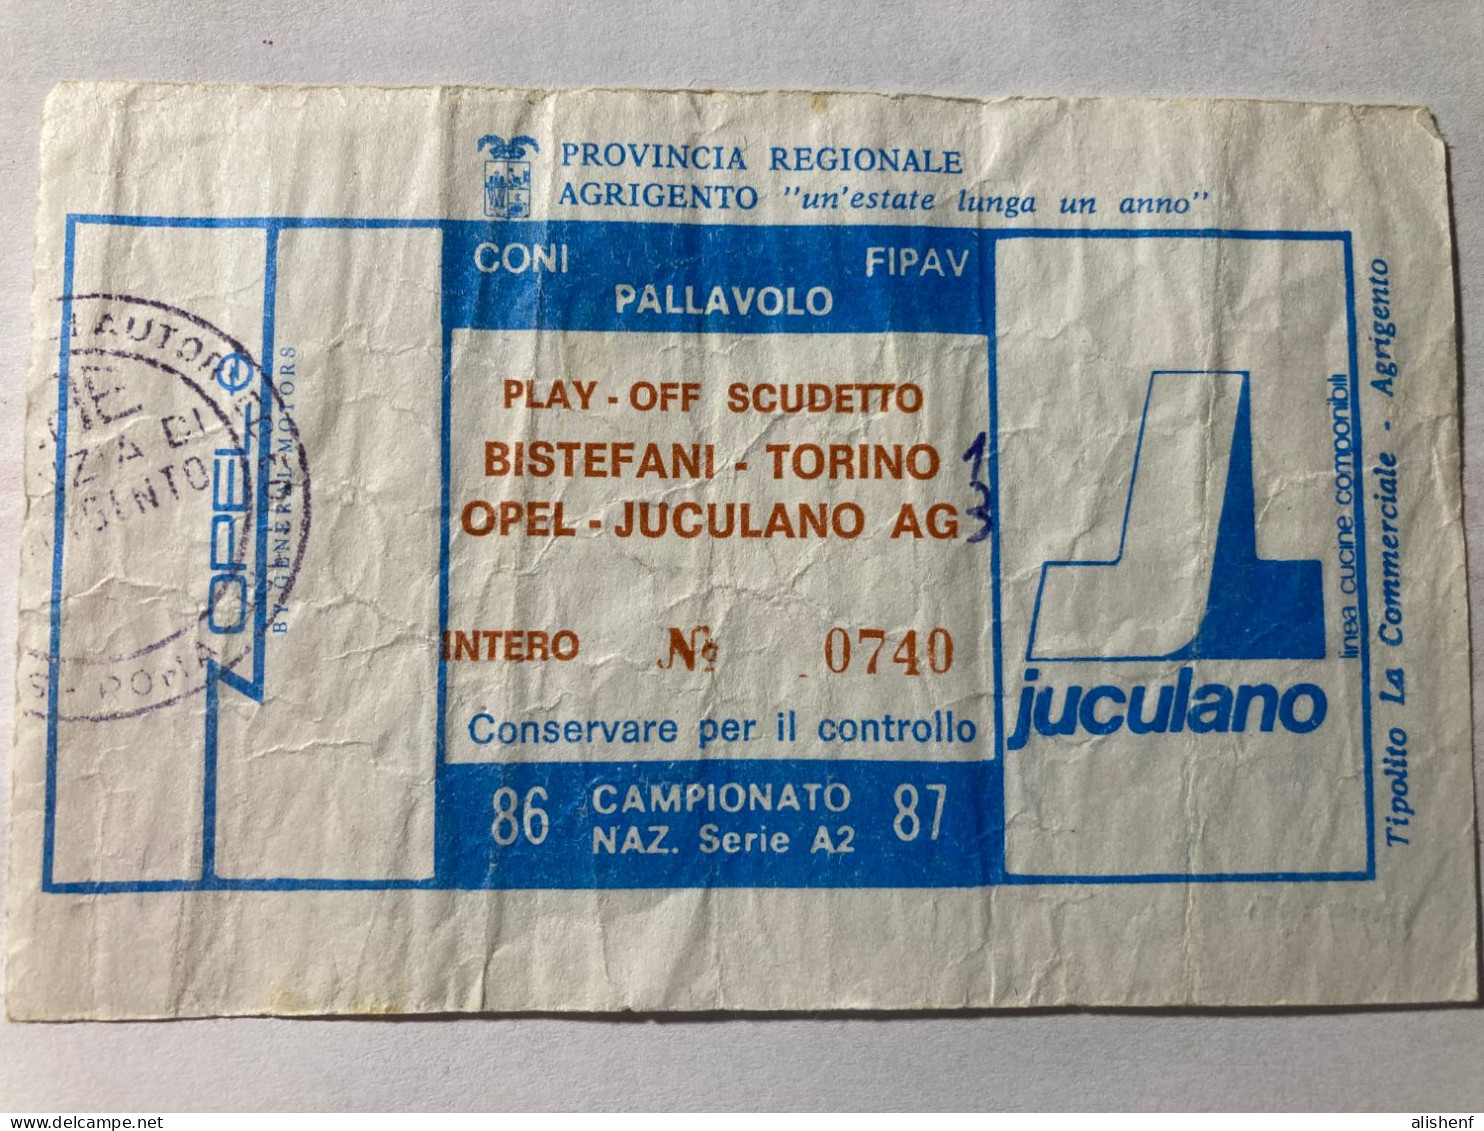 Biglietto Pallavolo Maschile A2 Play Off Scudetto Opel Juculano Agrigento Bistefani Torino 1986-87 - Eintrittskarten